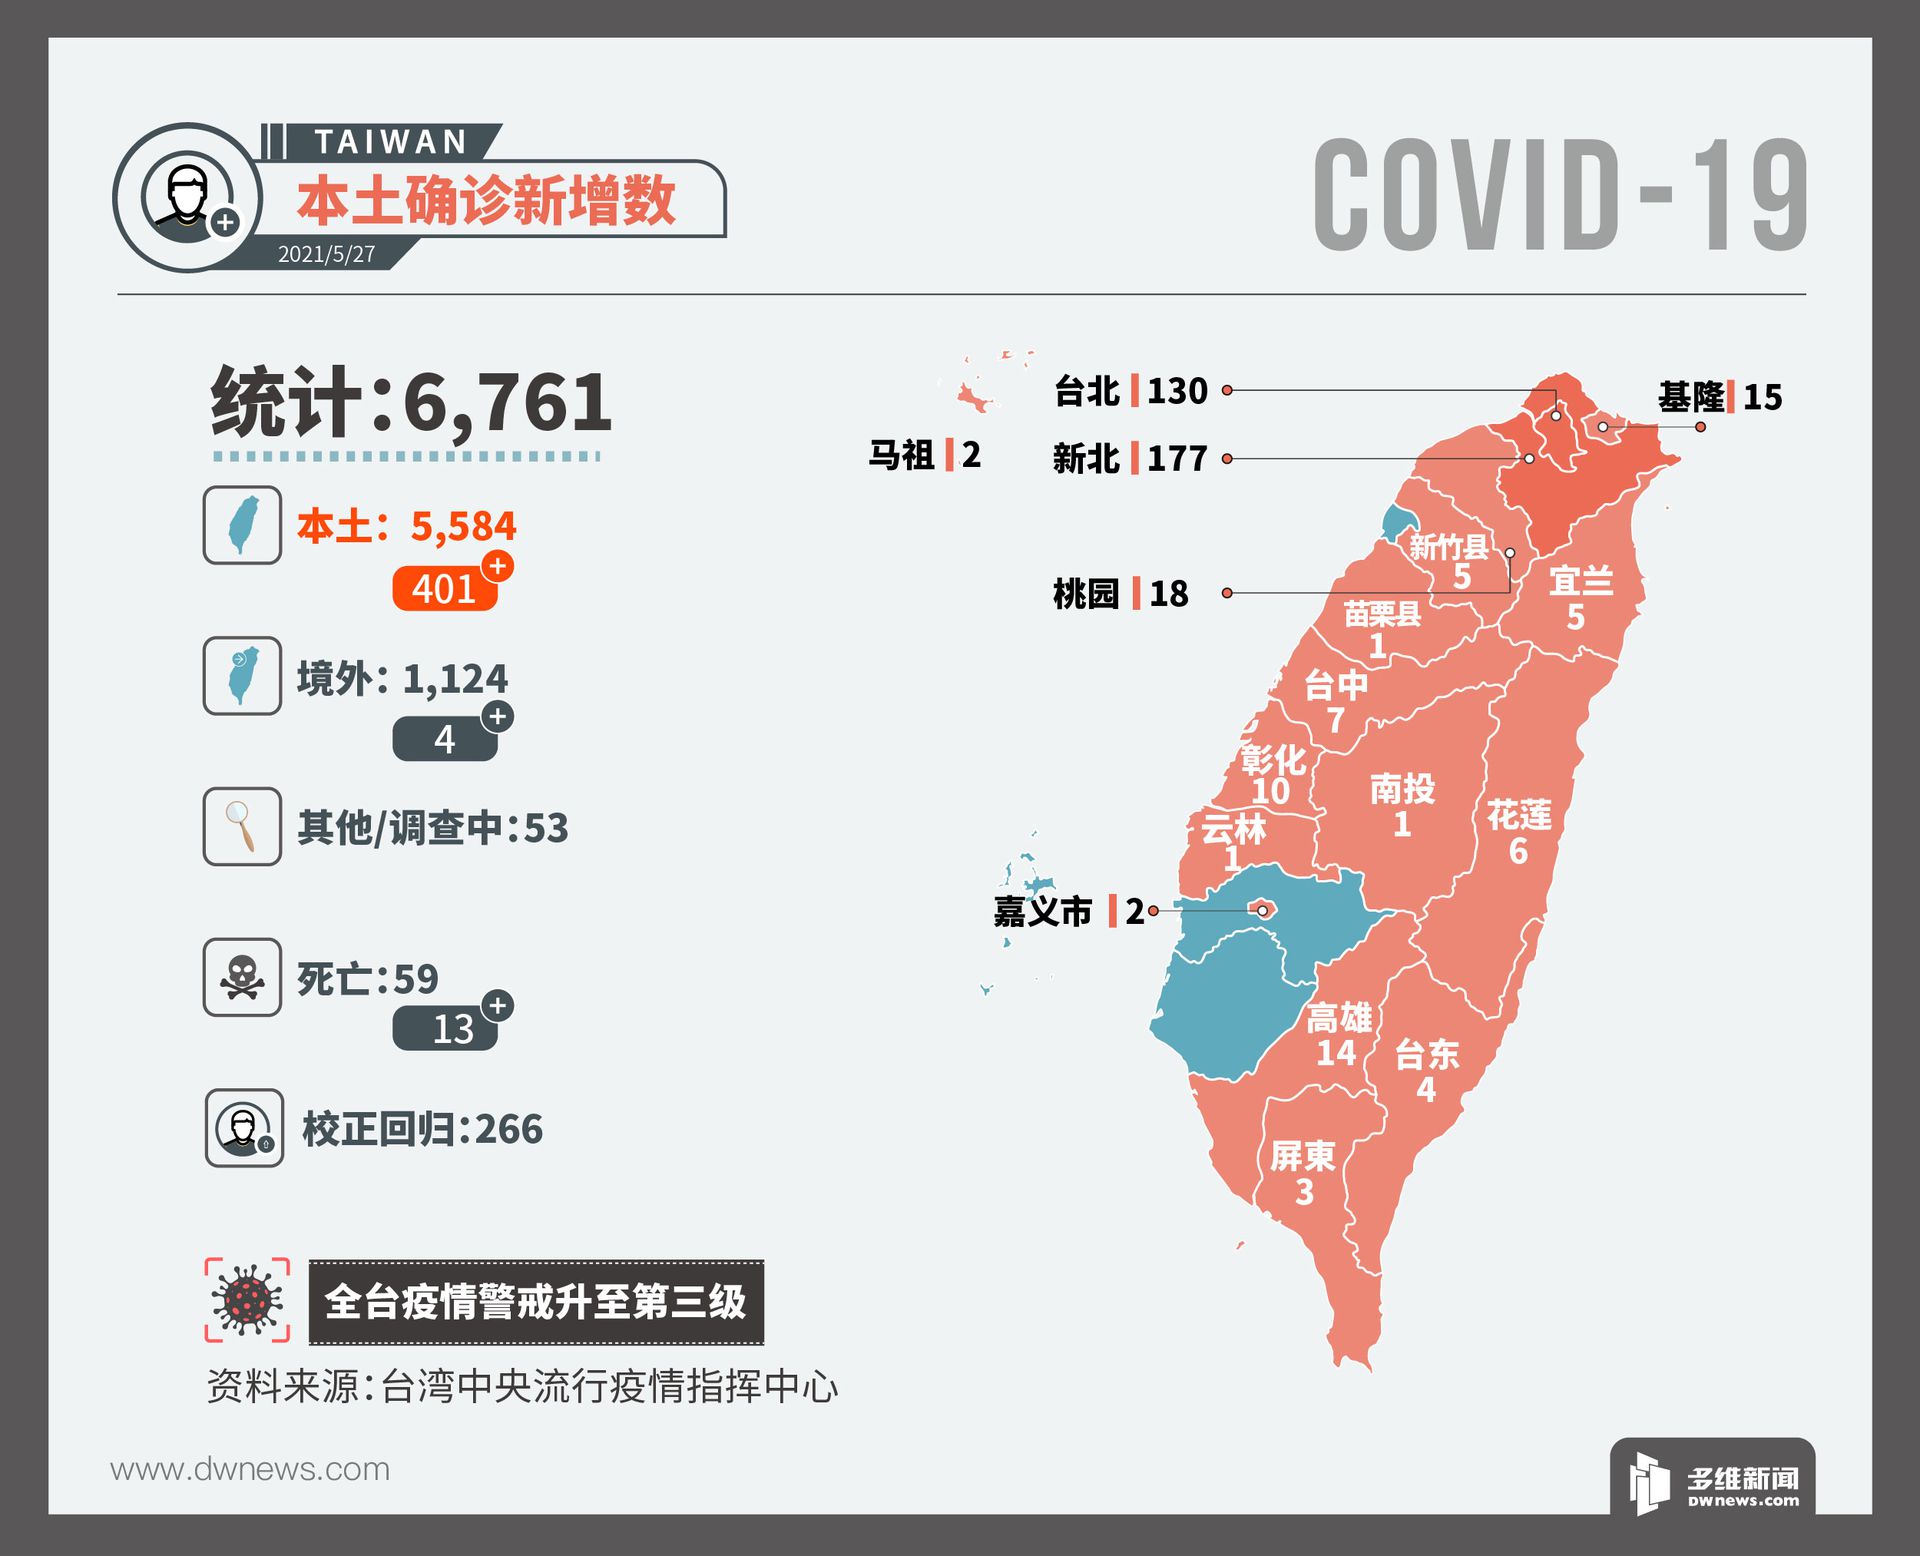 台湾疫情实时更新 台官方保守应对陆供疫苗却期待日方相赠 多维新闻 台湾